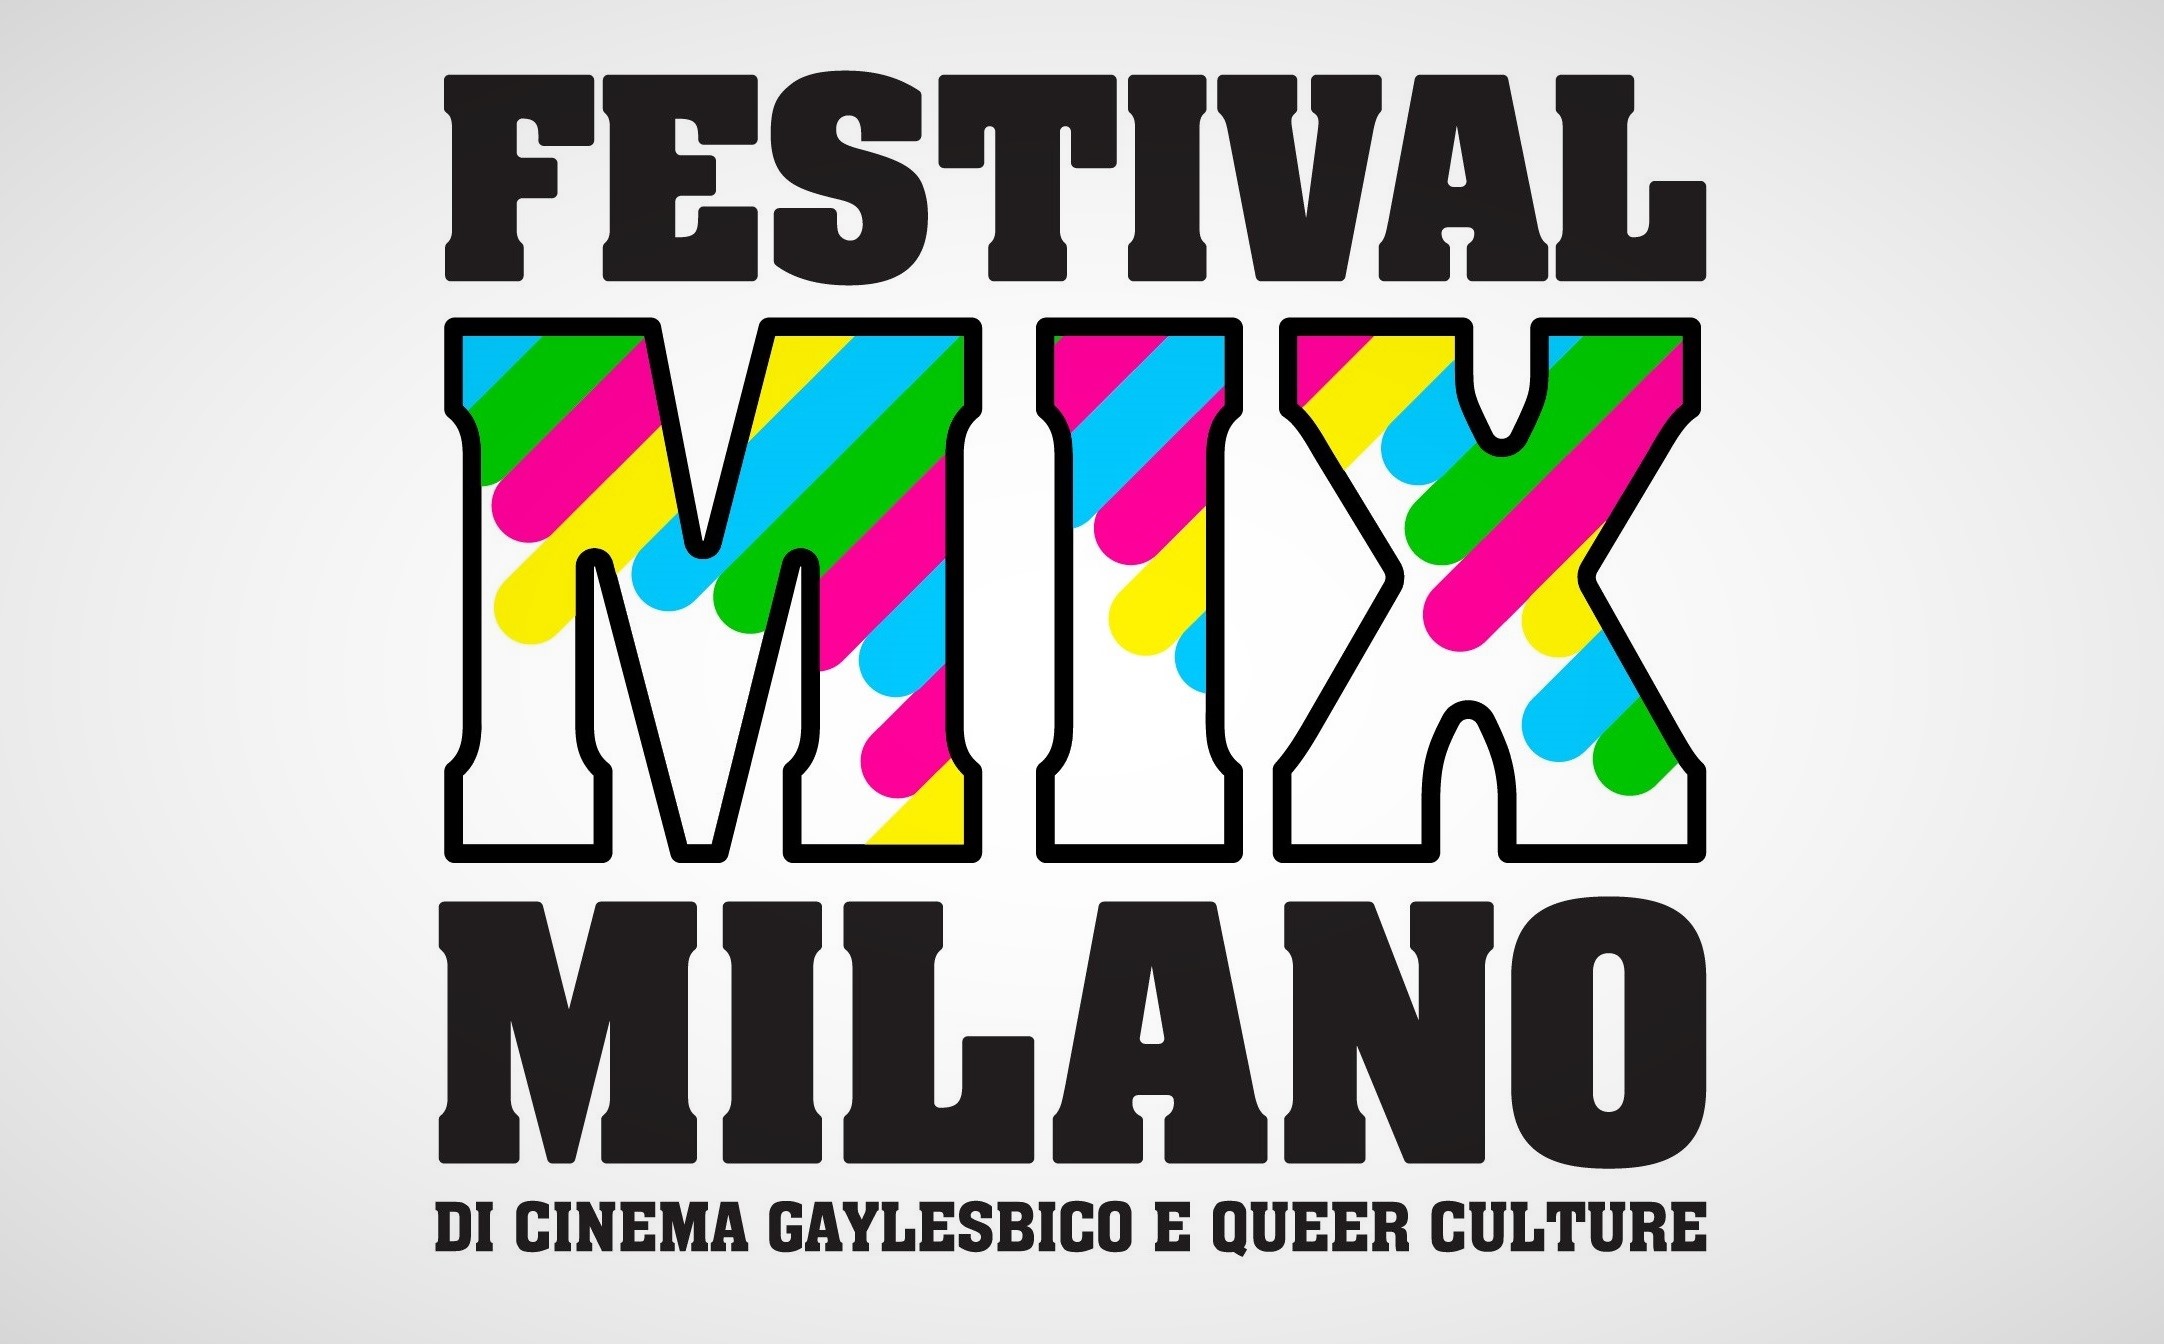 Festival MIX Milano di Cinema Gaylesbico e Queer Culture